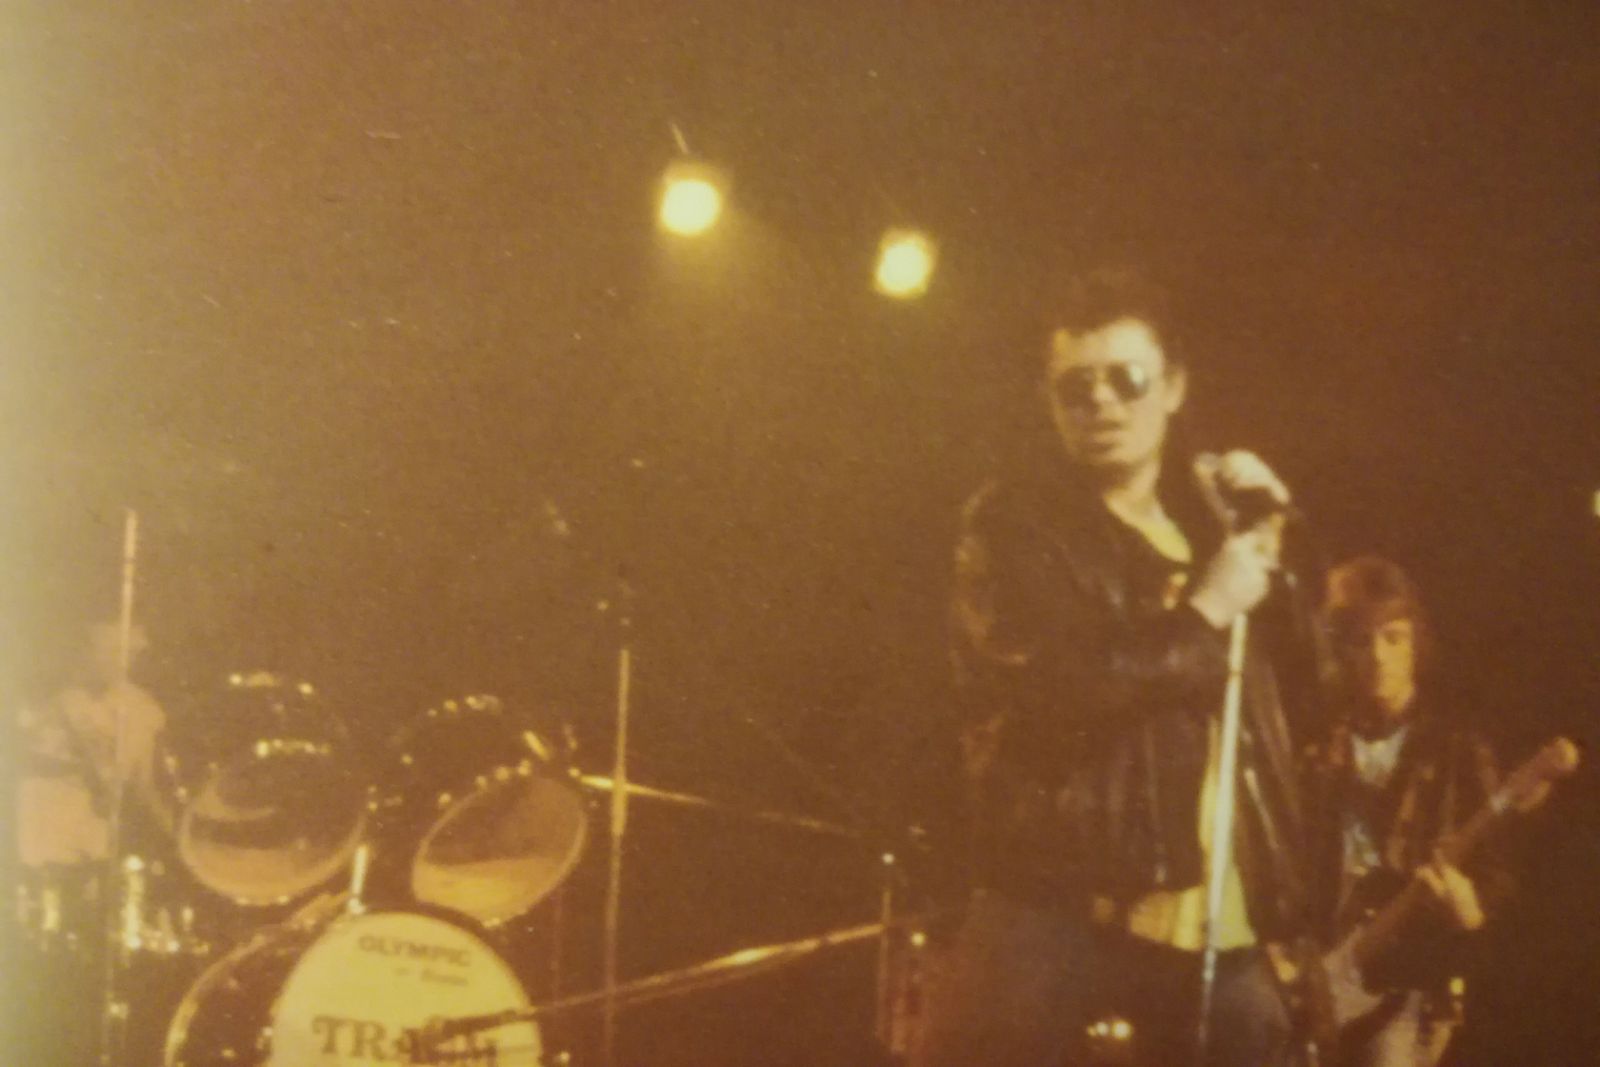 40års jubilæum for den danske (pære) punk</br>Dream Police er et af de bands som optræder på det første opsamlingsalbum Pære Punk fra 1979. </br>Foto: PR-foto